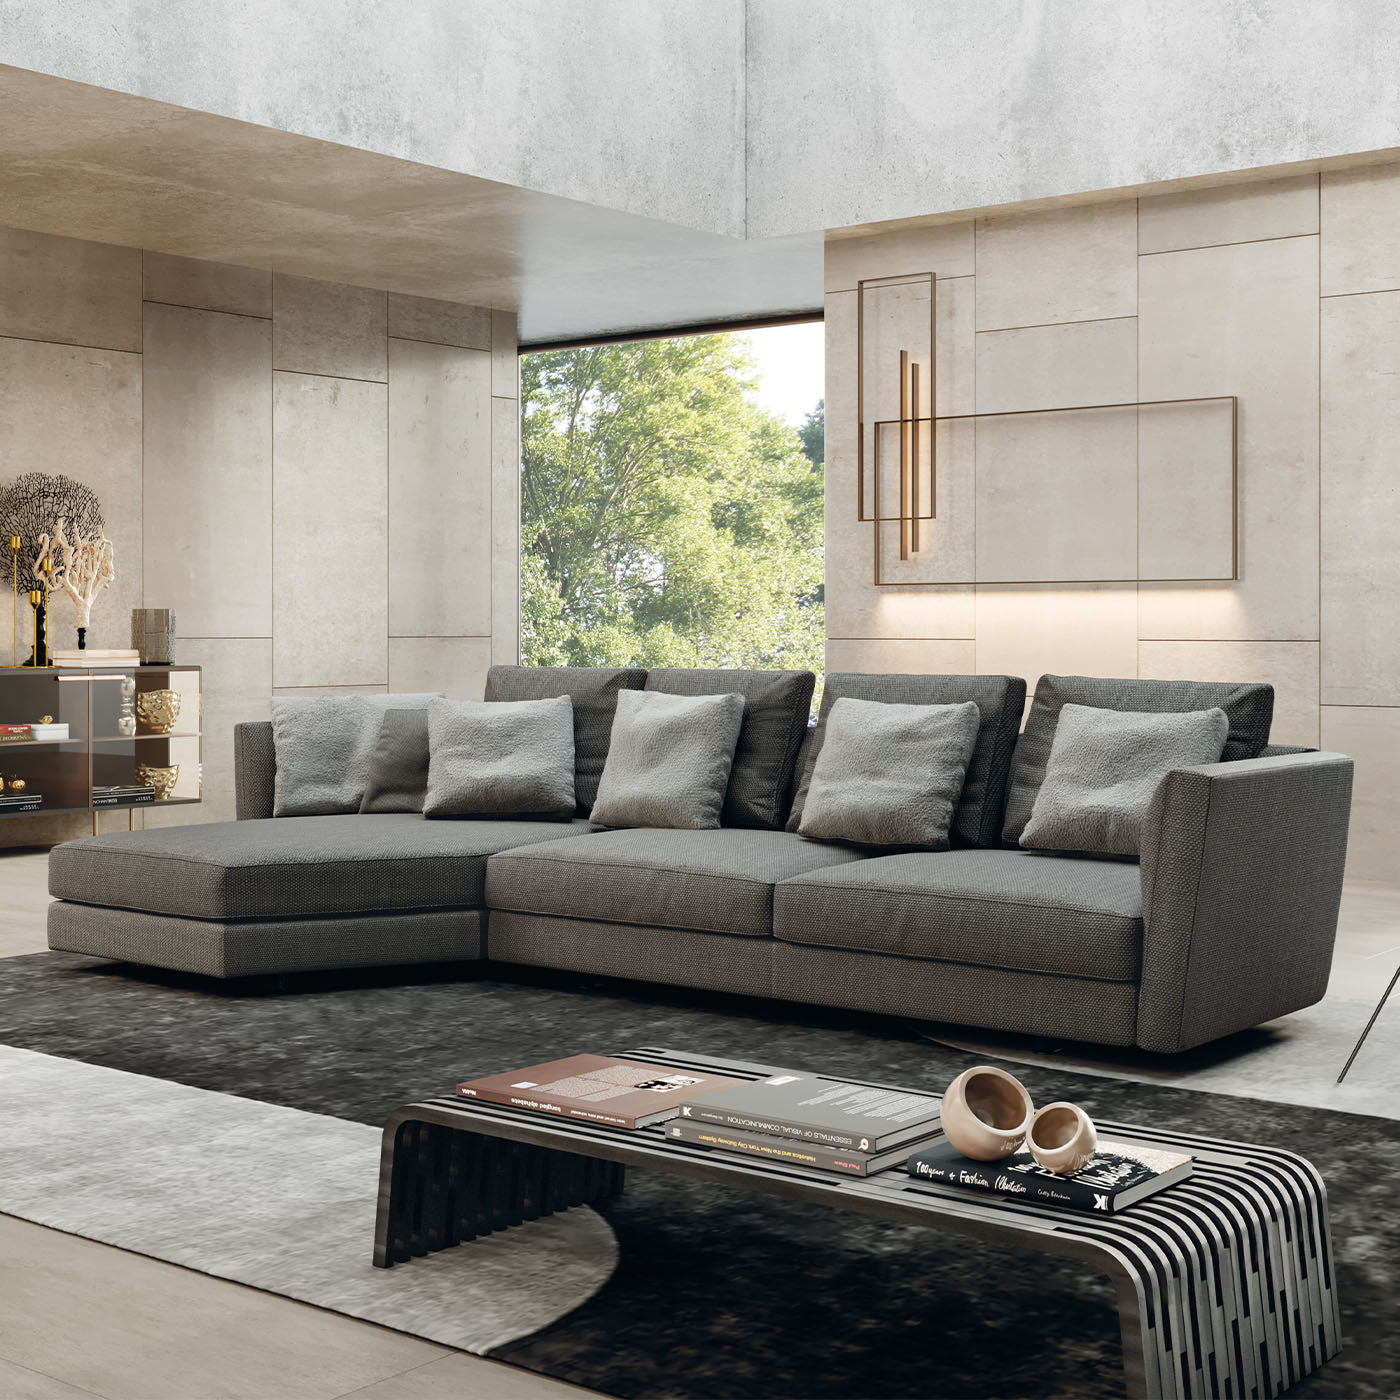 Ester Large Modular Sofa by Norberto Delfinetti - Alternative view 1